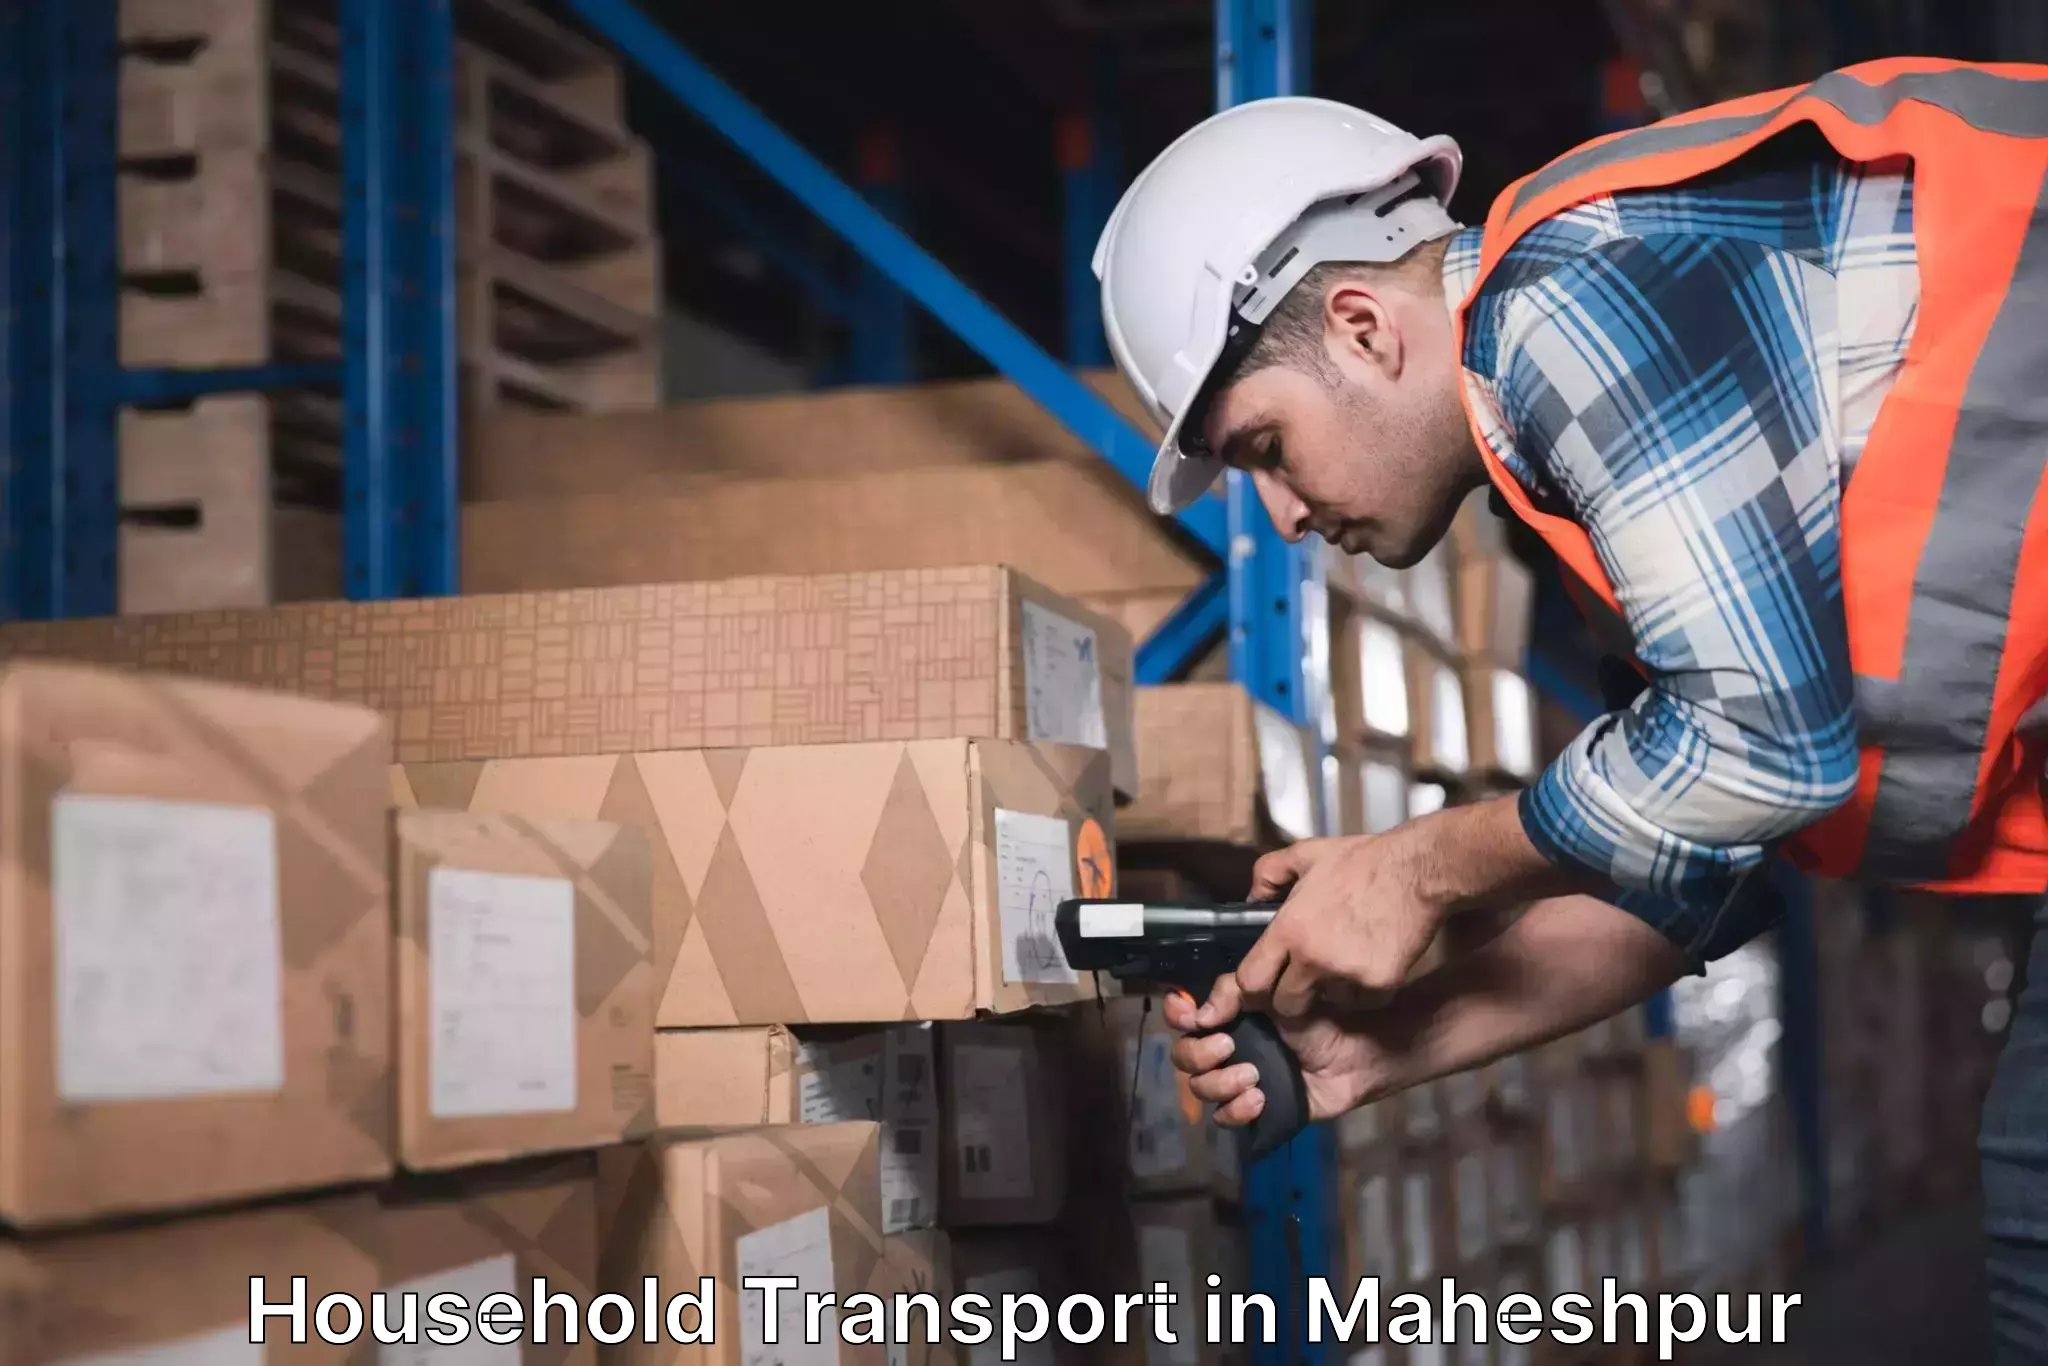 Household transport experts in Maheshpur